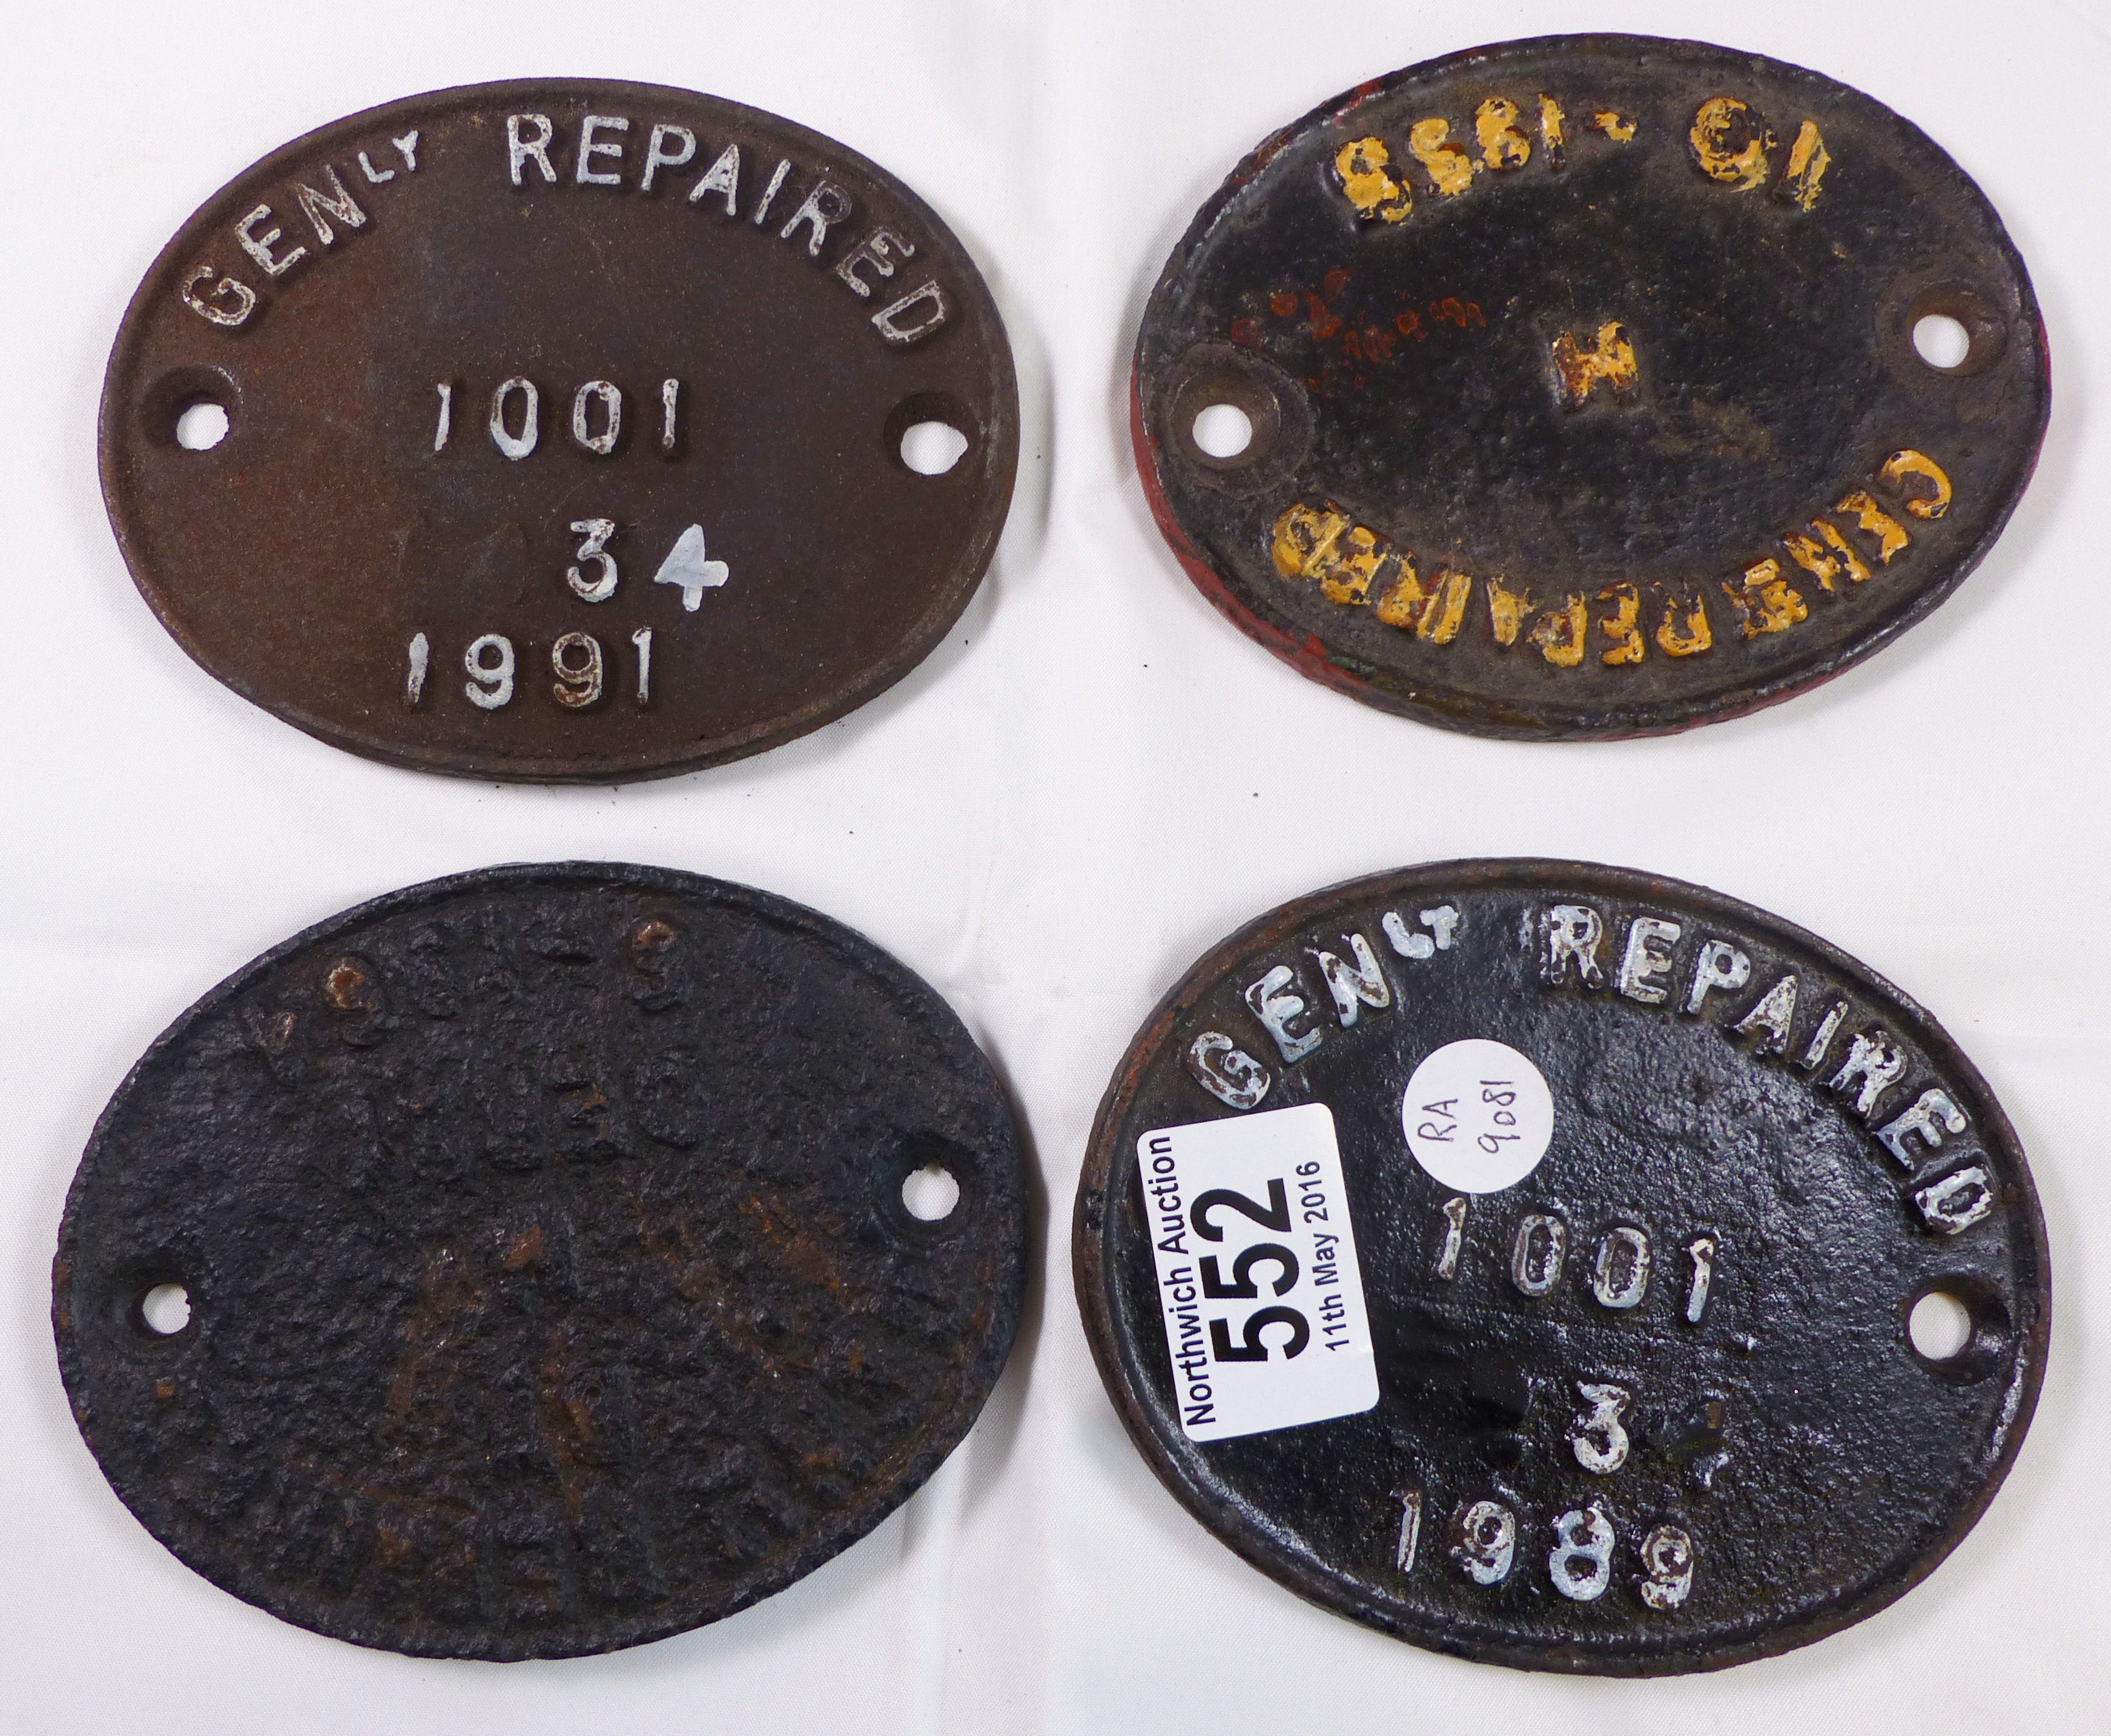 FOUR RAILWAY REPAIR PLATES. Four cast iron railway repair plates, 10 x 13cm